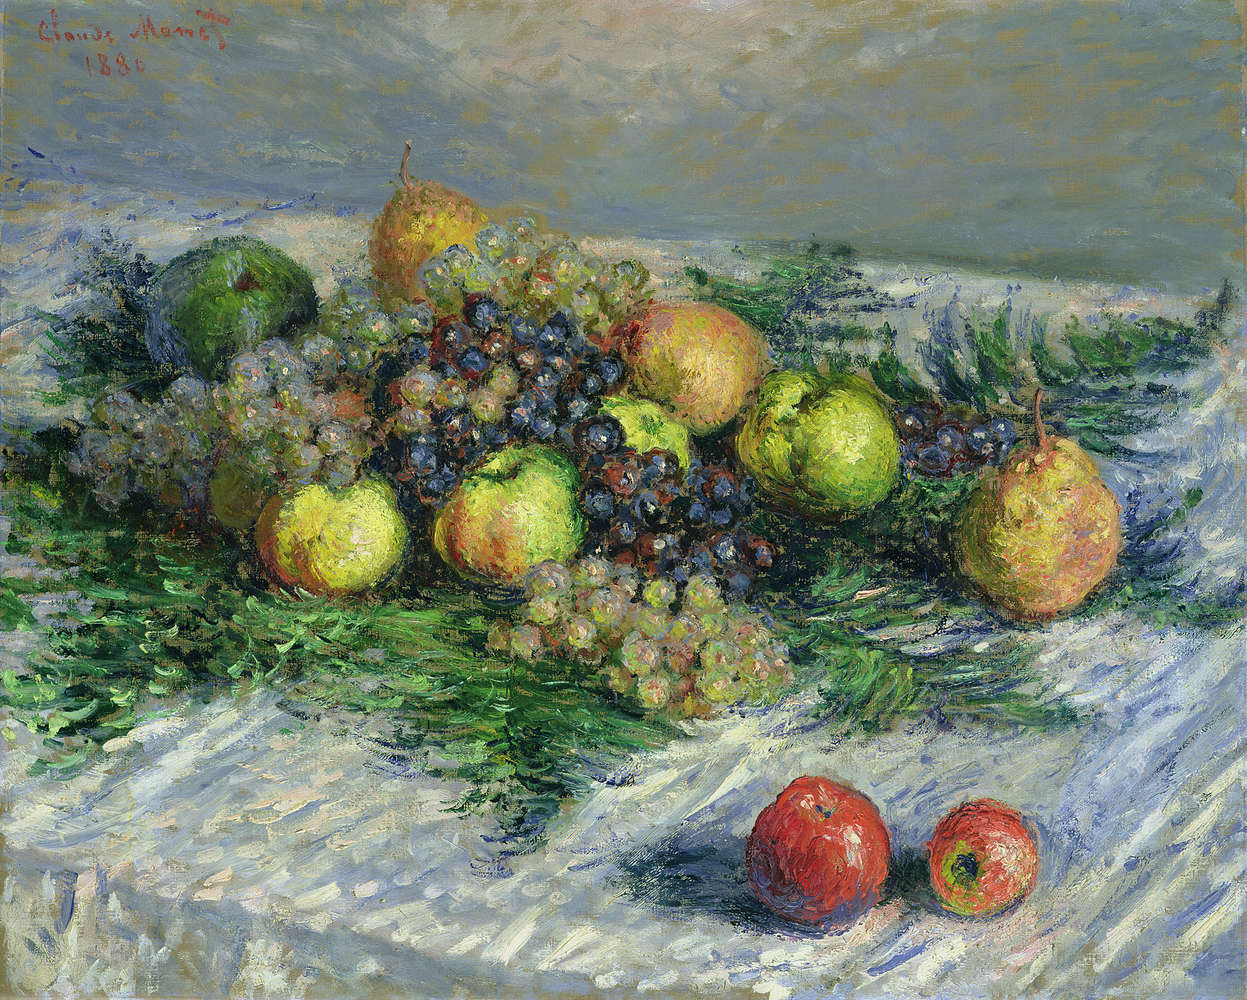             Fototapete "Stillleben mit Birnen und Trauben" von Claude Monet
        